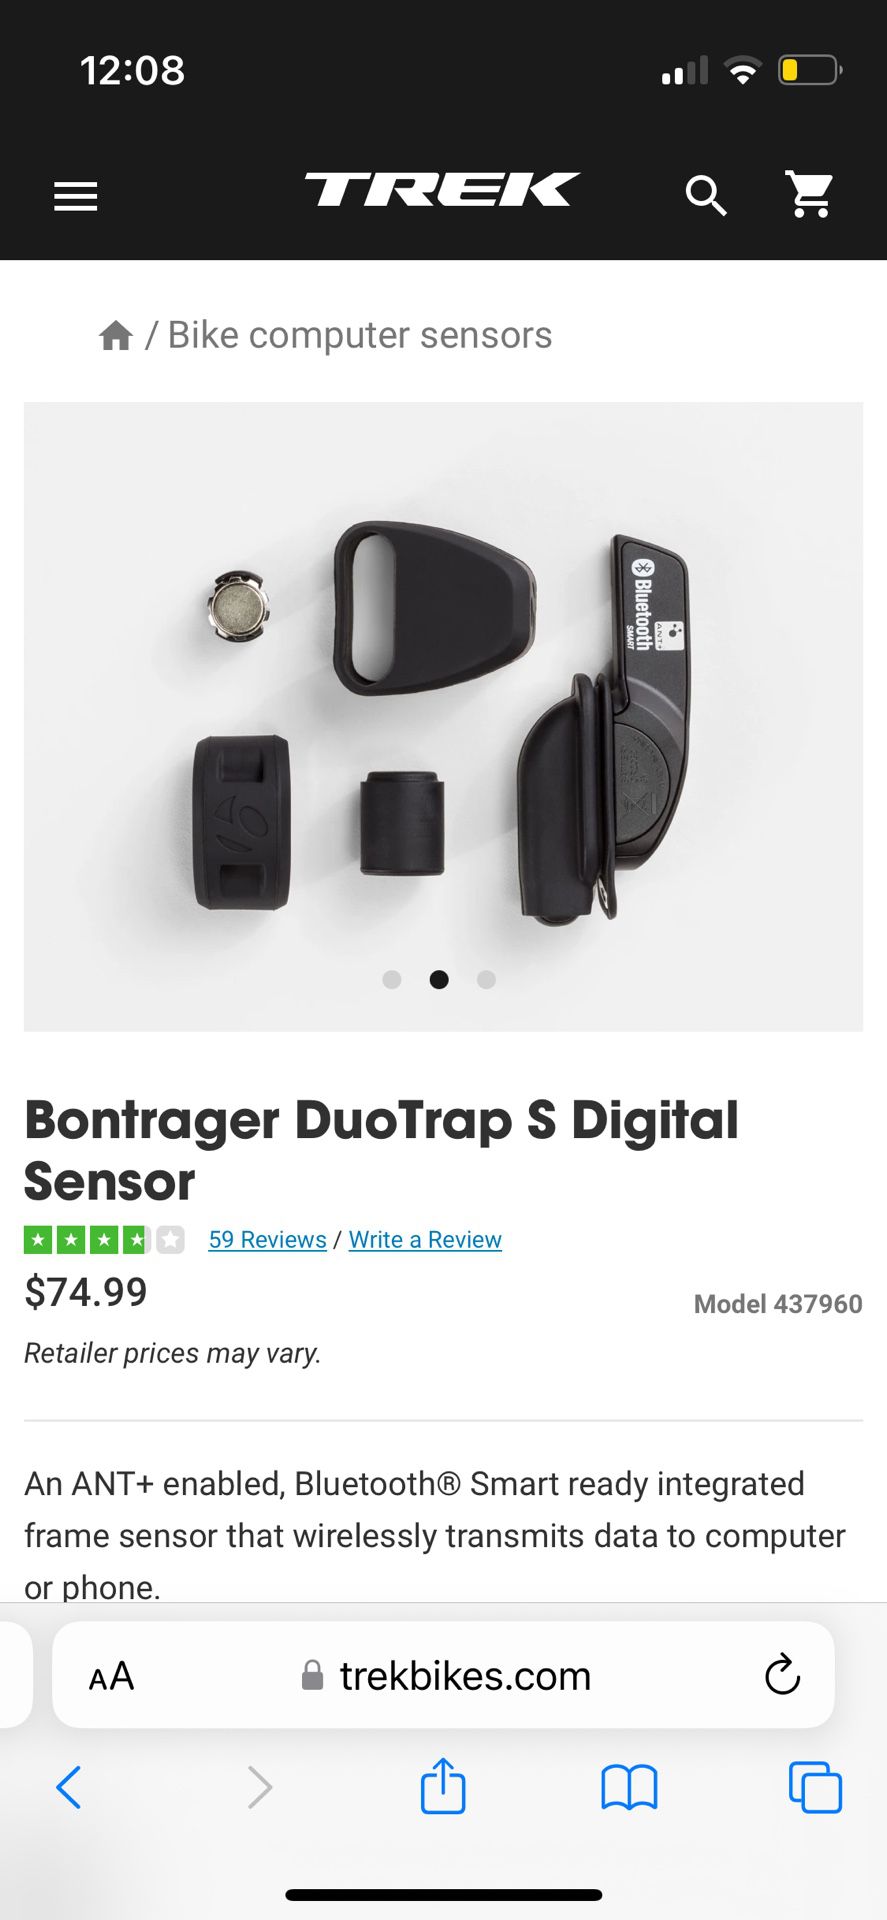 Duotrap S Digital Sensor For Trek Bikes 